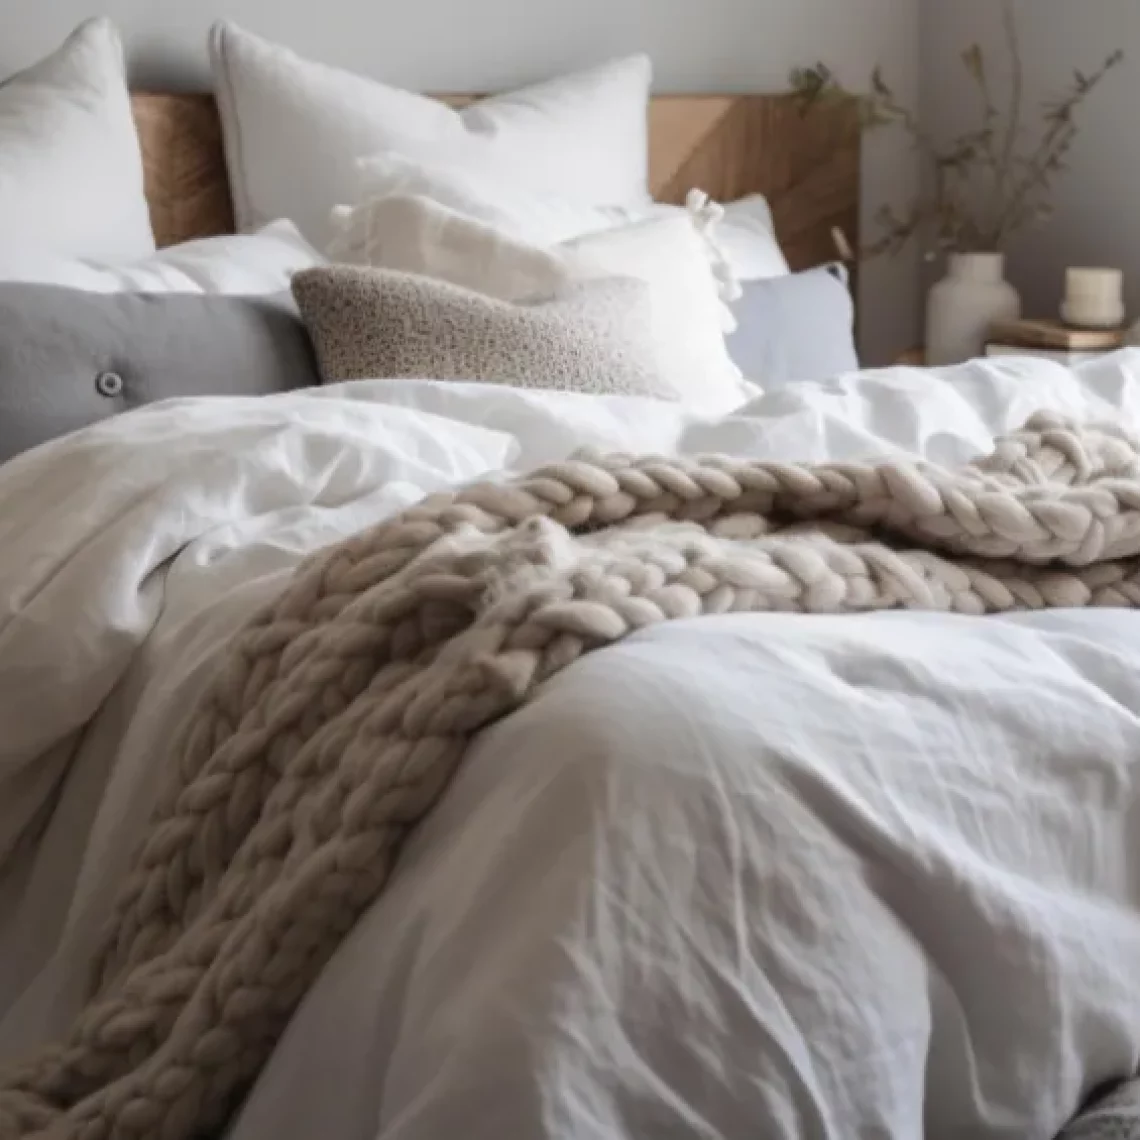 תצלום מיטה זוגית לשינה מפנקת המייצגת מדיך לבחירת שמיכות פוך